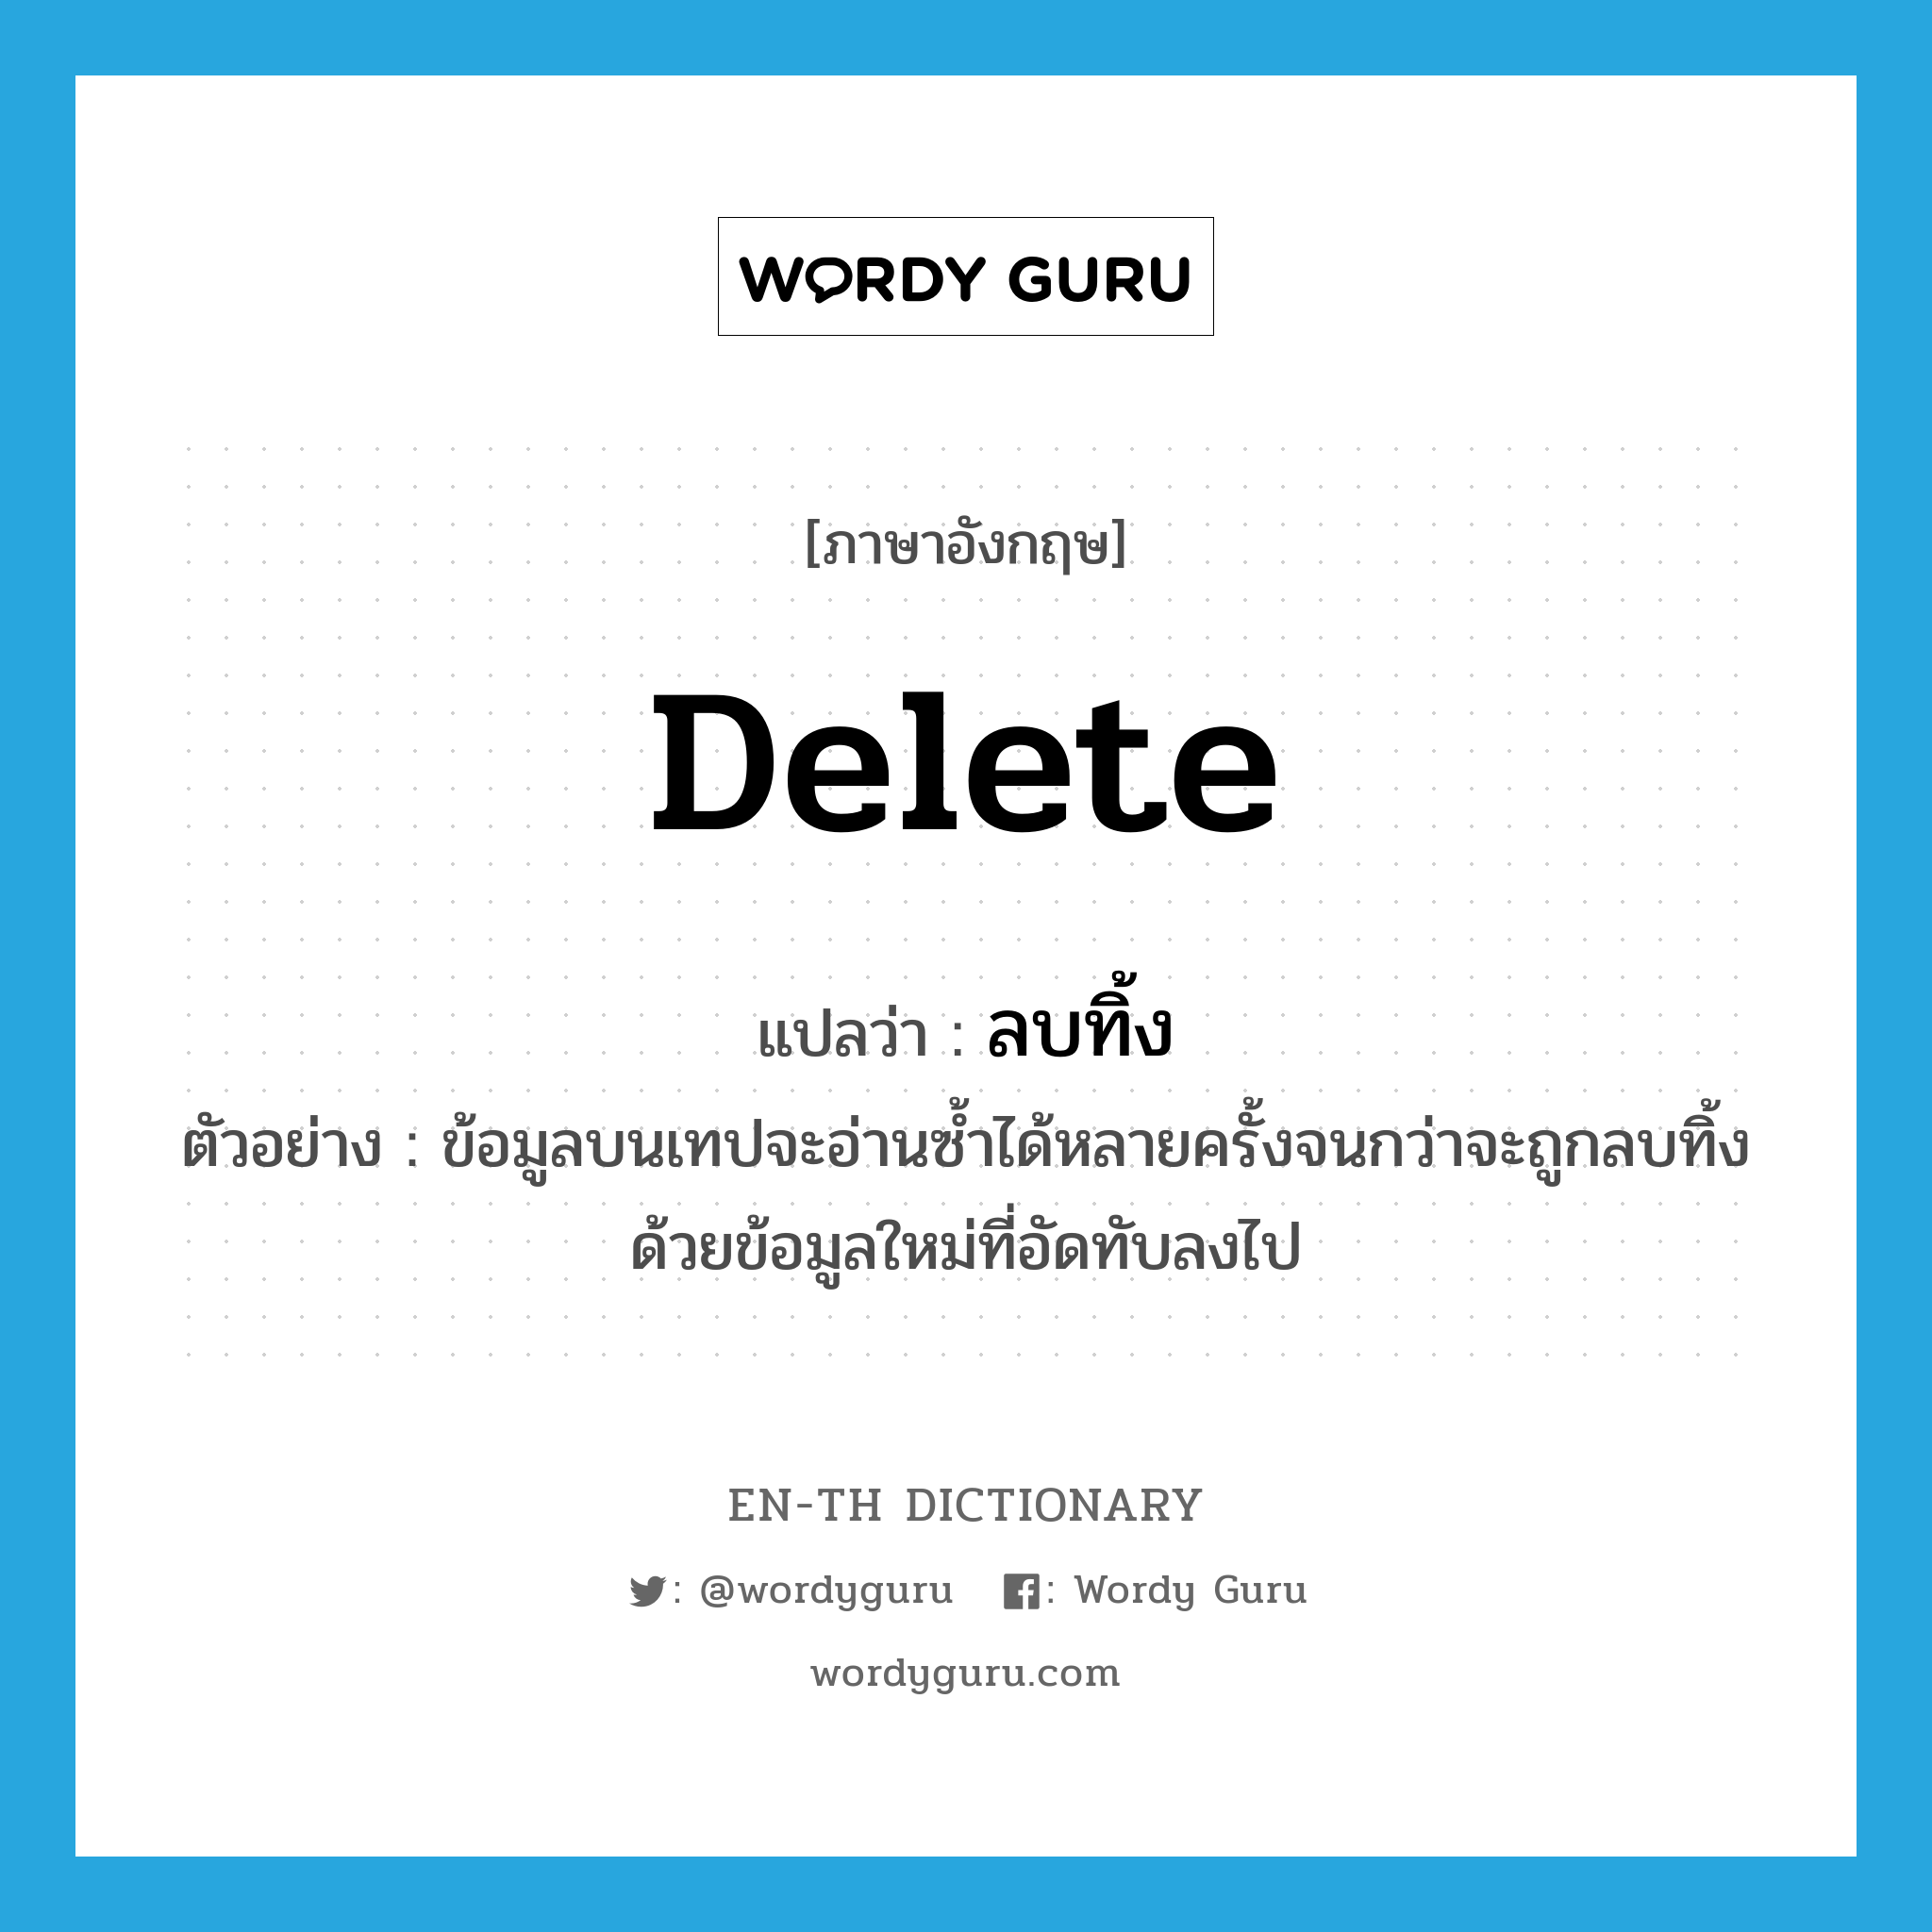 delete แปลว่า?, คำศัพท์ภาษาอังกฤษ delete แปลว่า ลบทิ้ง ประเภท V ตัวอย่าง ข้อมูลบนเทปจะอ่านซ้ำได้หลายครั้งจนกว่าจะถูกลบทิ้งด้วยข้อมูลใหม่ที่อัดทับลงไป หมวด V